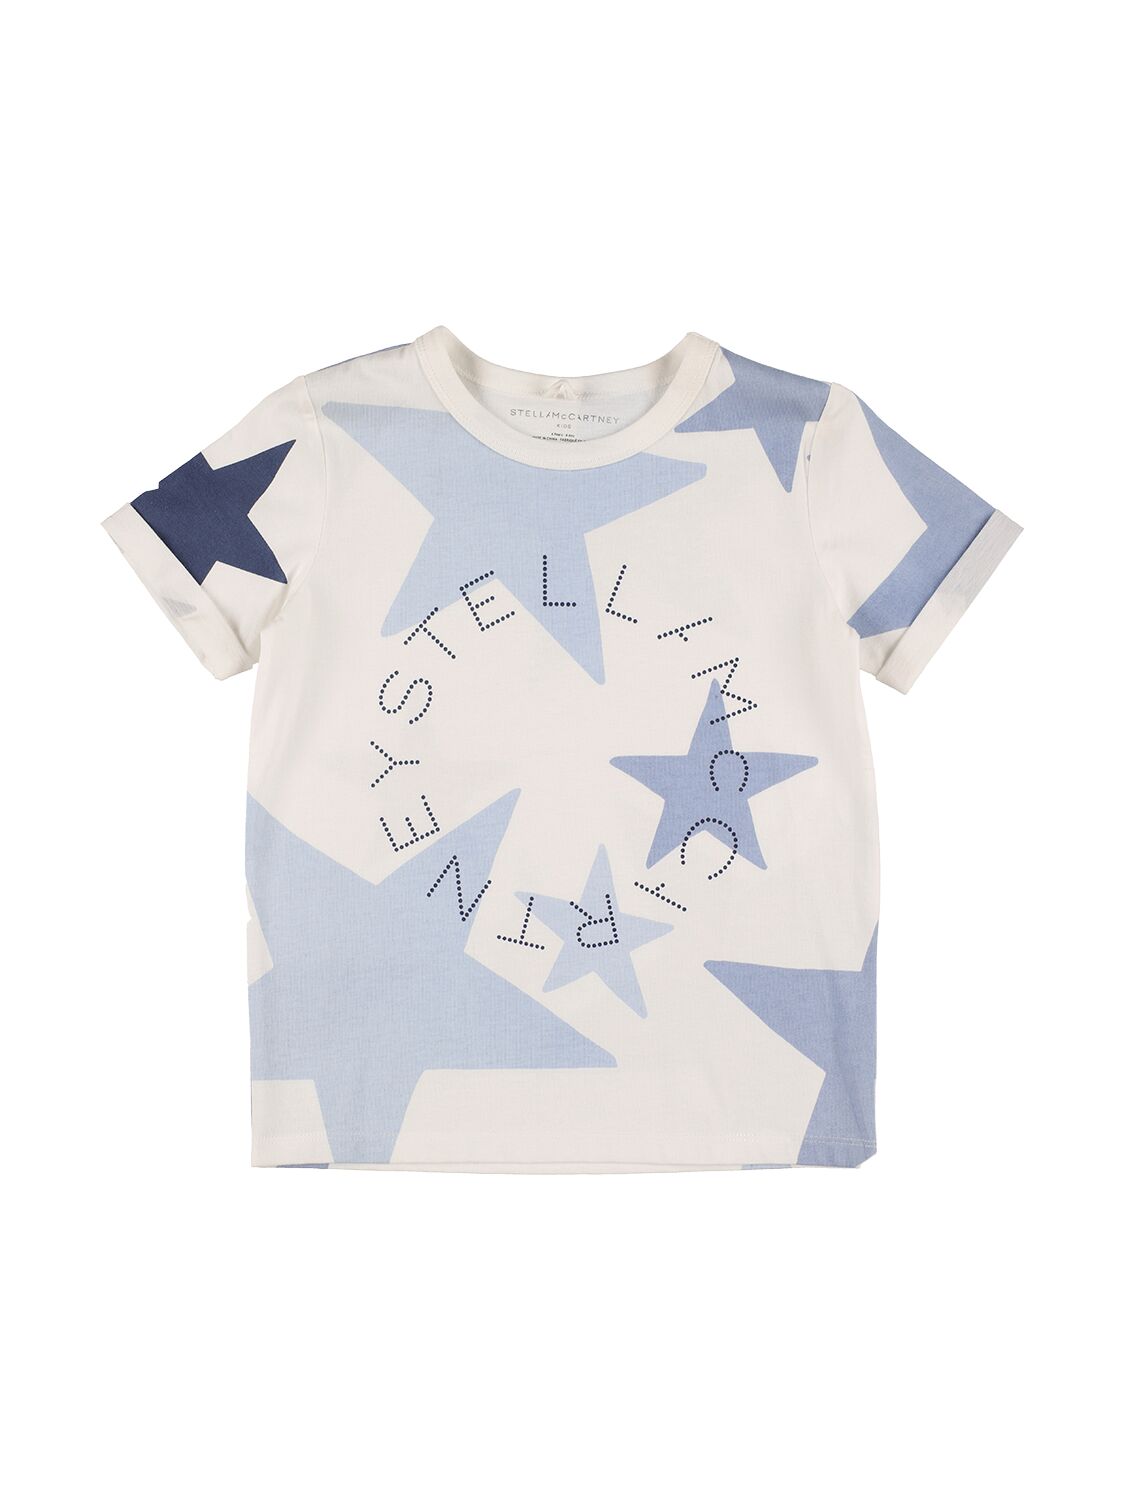 Stella Mccartney Kids' Organic Cotton Printed Logo T-shirt In White,blue